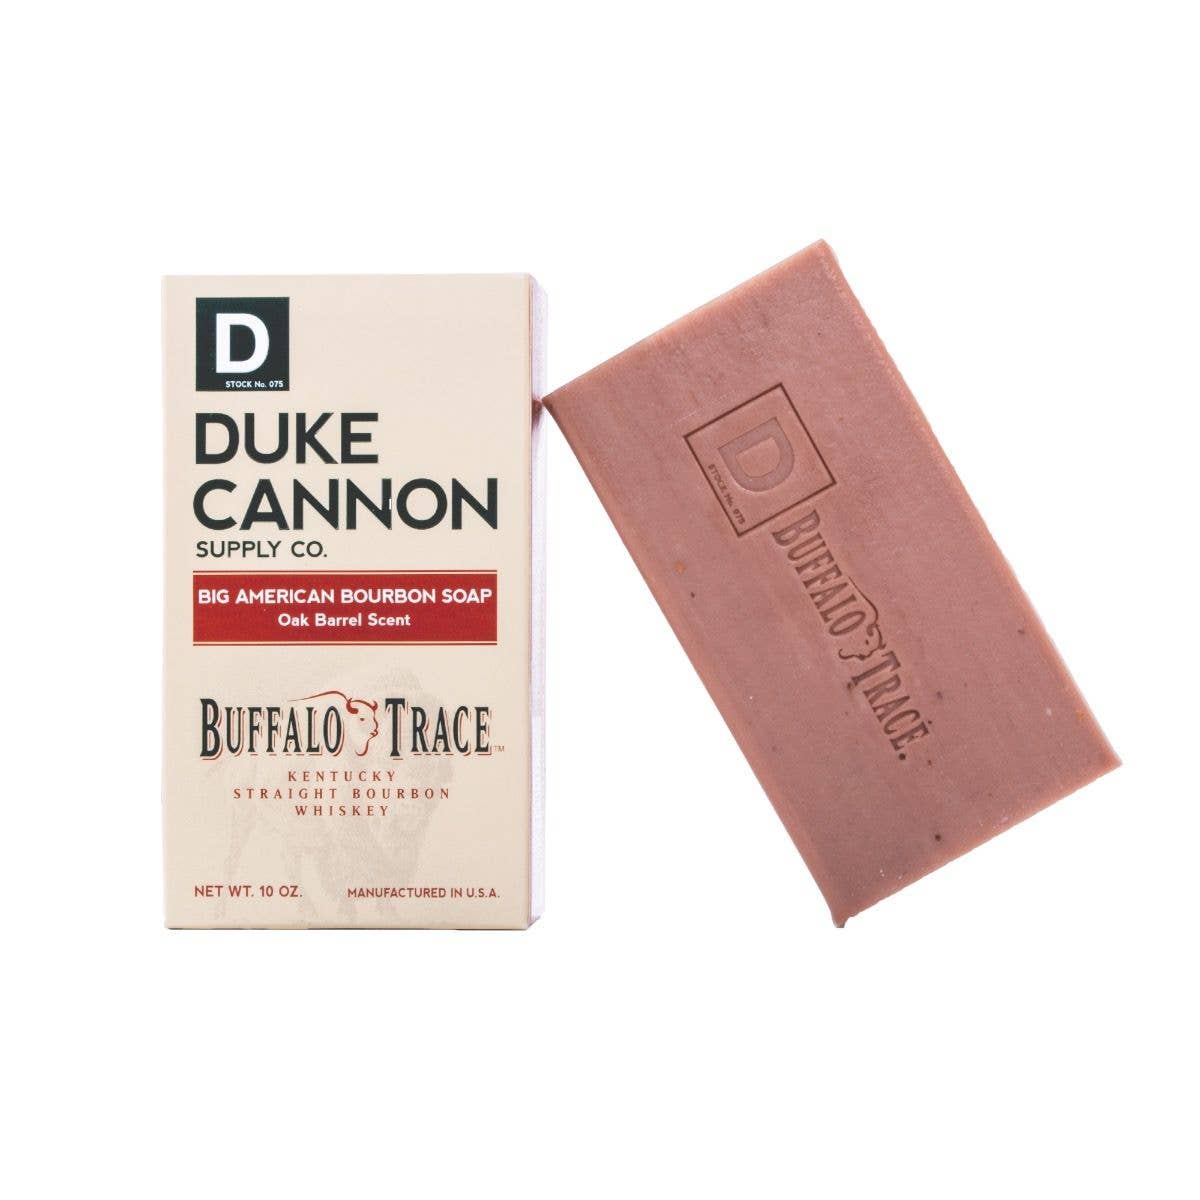 "Duke Cannon" Big American Bourbon Soap